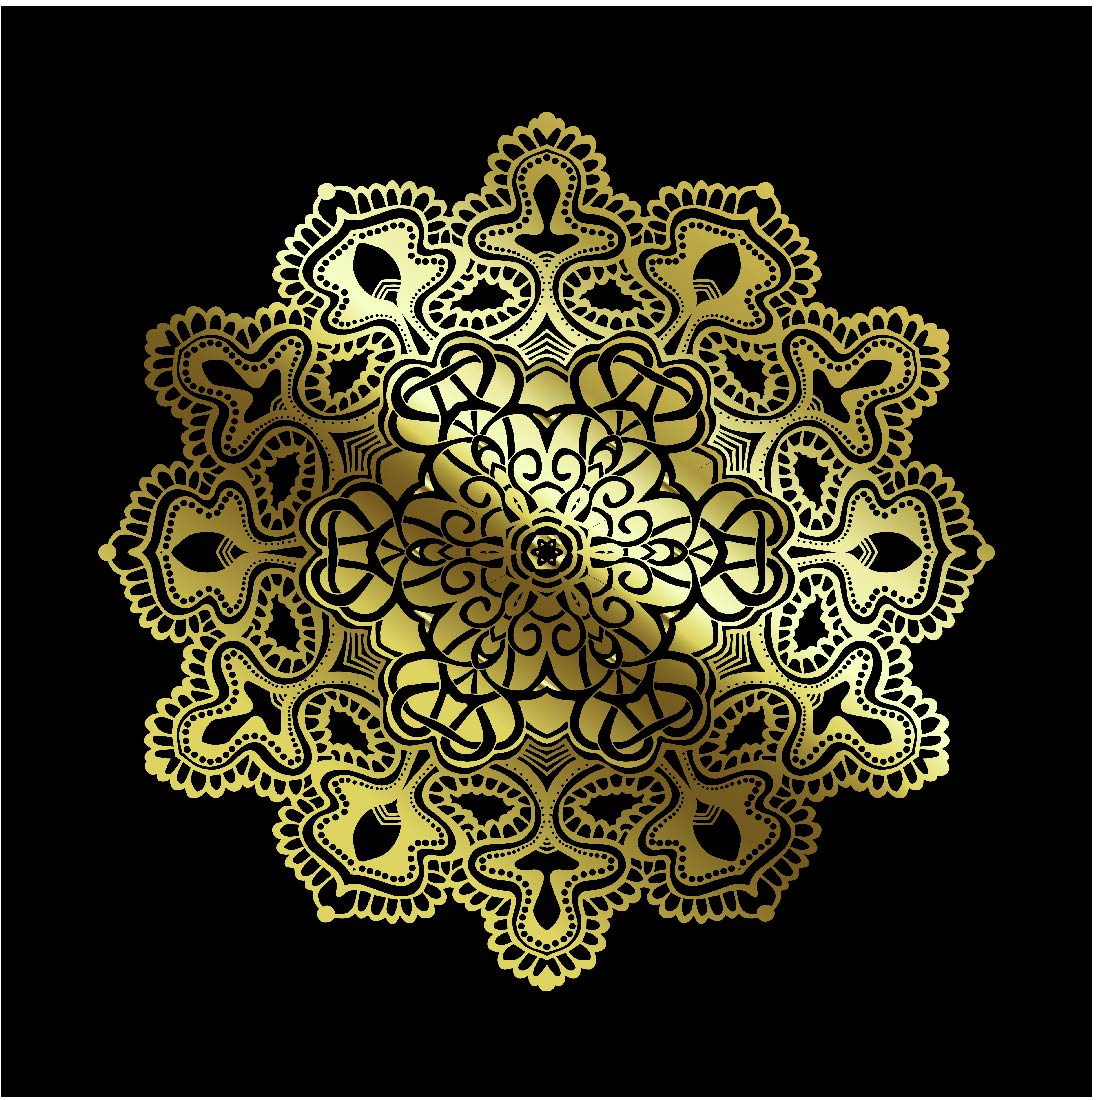 Golden Mandala Art Vectors cover image.